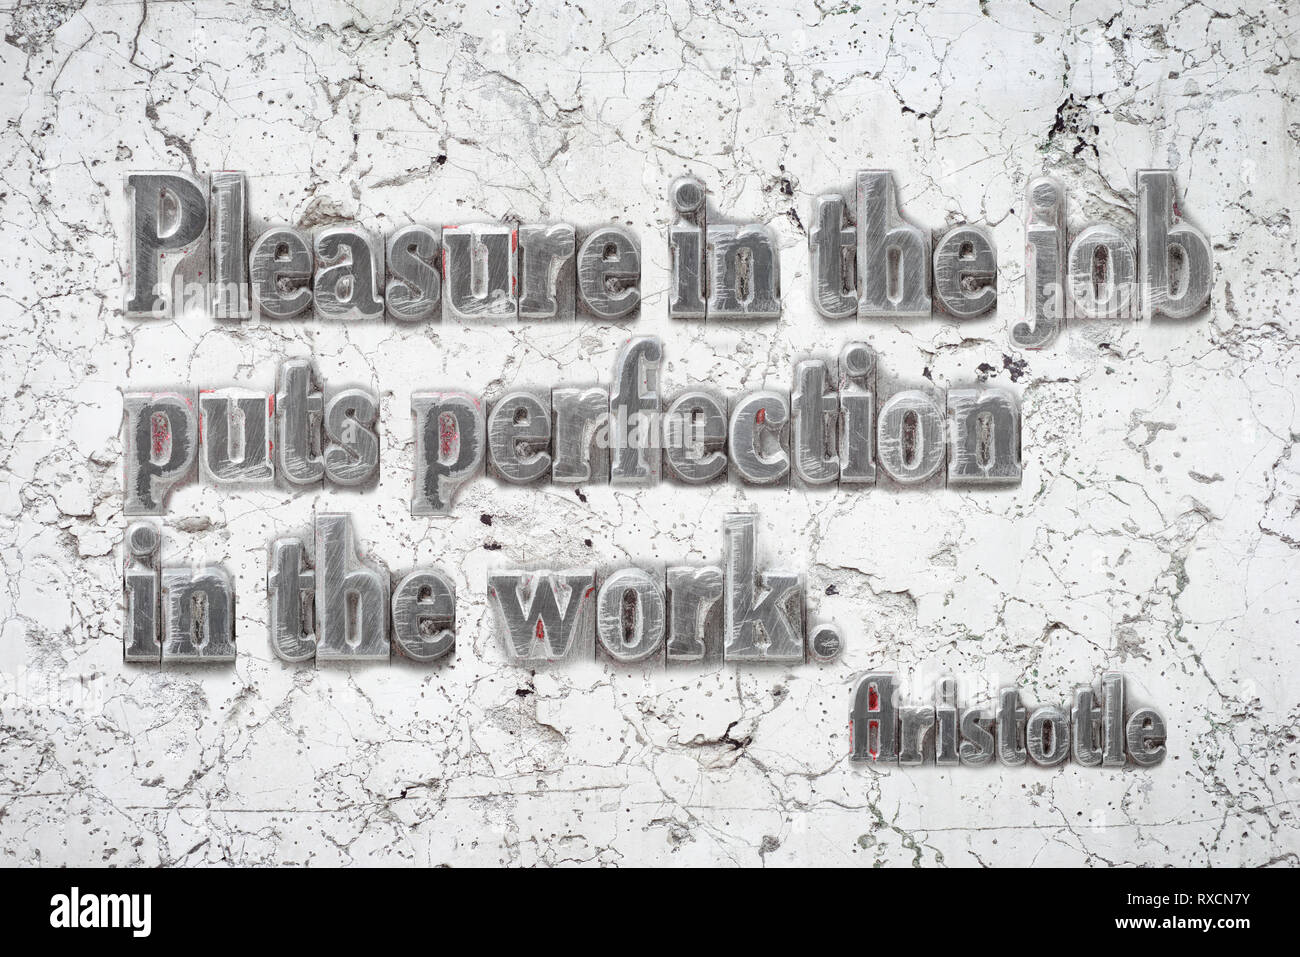 Piacere nel lavoro - antico filosofo greco Aristotele quotazioni montato su marmo bianco parete Foto Stock